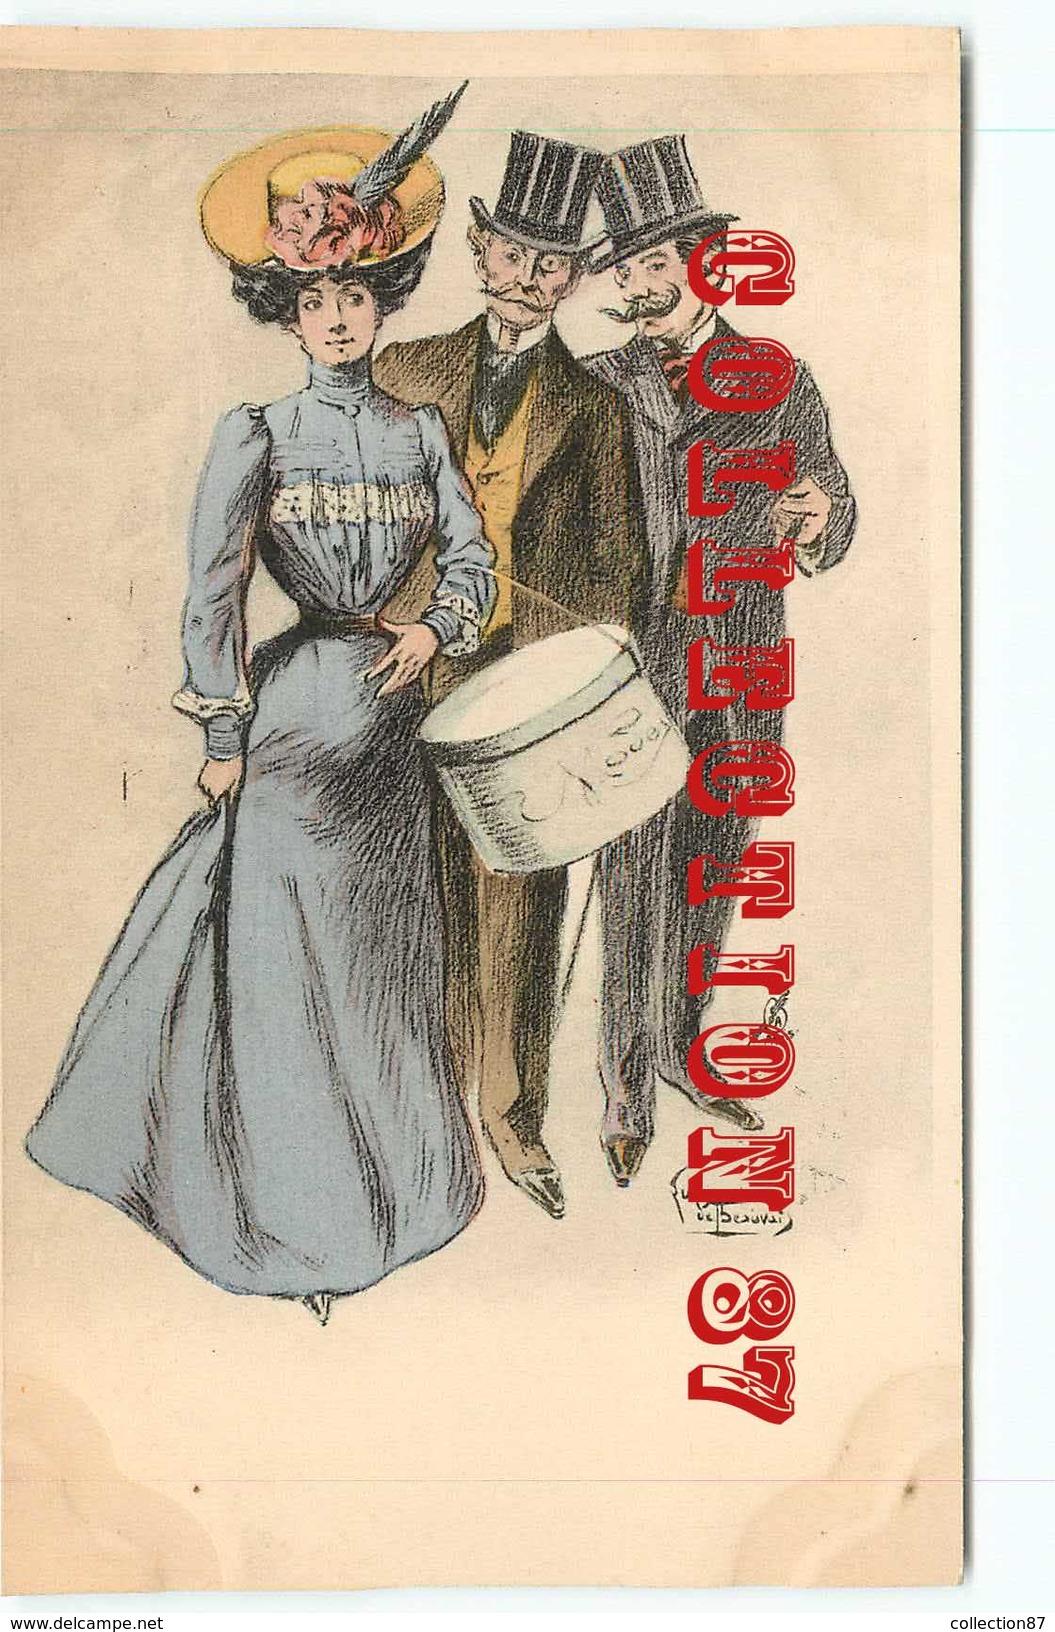 ART NOUVEAU Par LUBIN De BEAUVAIS - FEMME ELEGANTE Au CHAPEAU - CHARME MODE - ILLUSTRATEUR - ILLUSTRATORE ARS NOVA 1900 - Beauvais